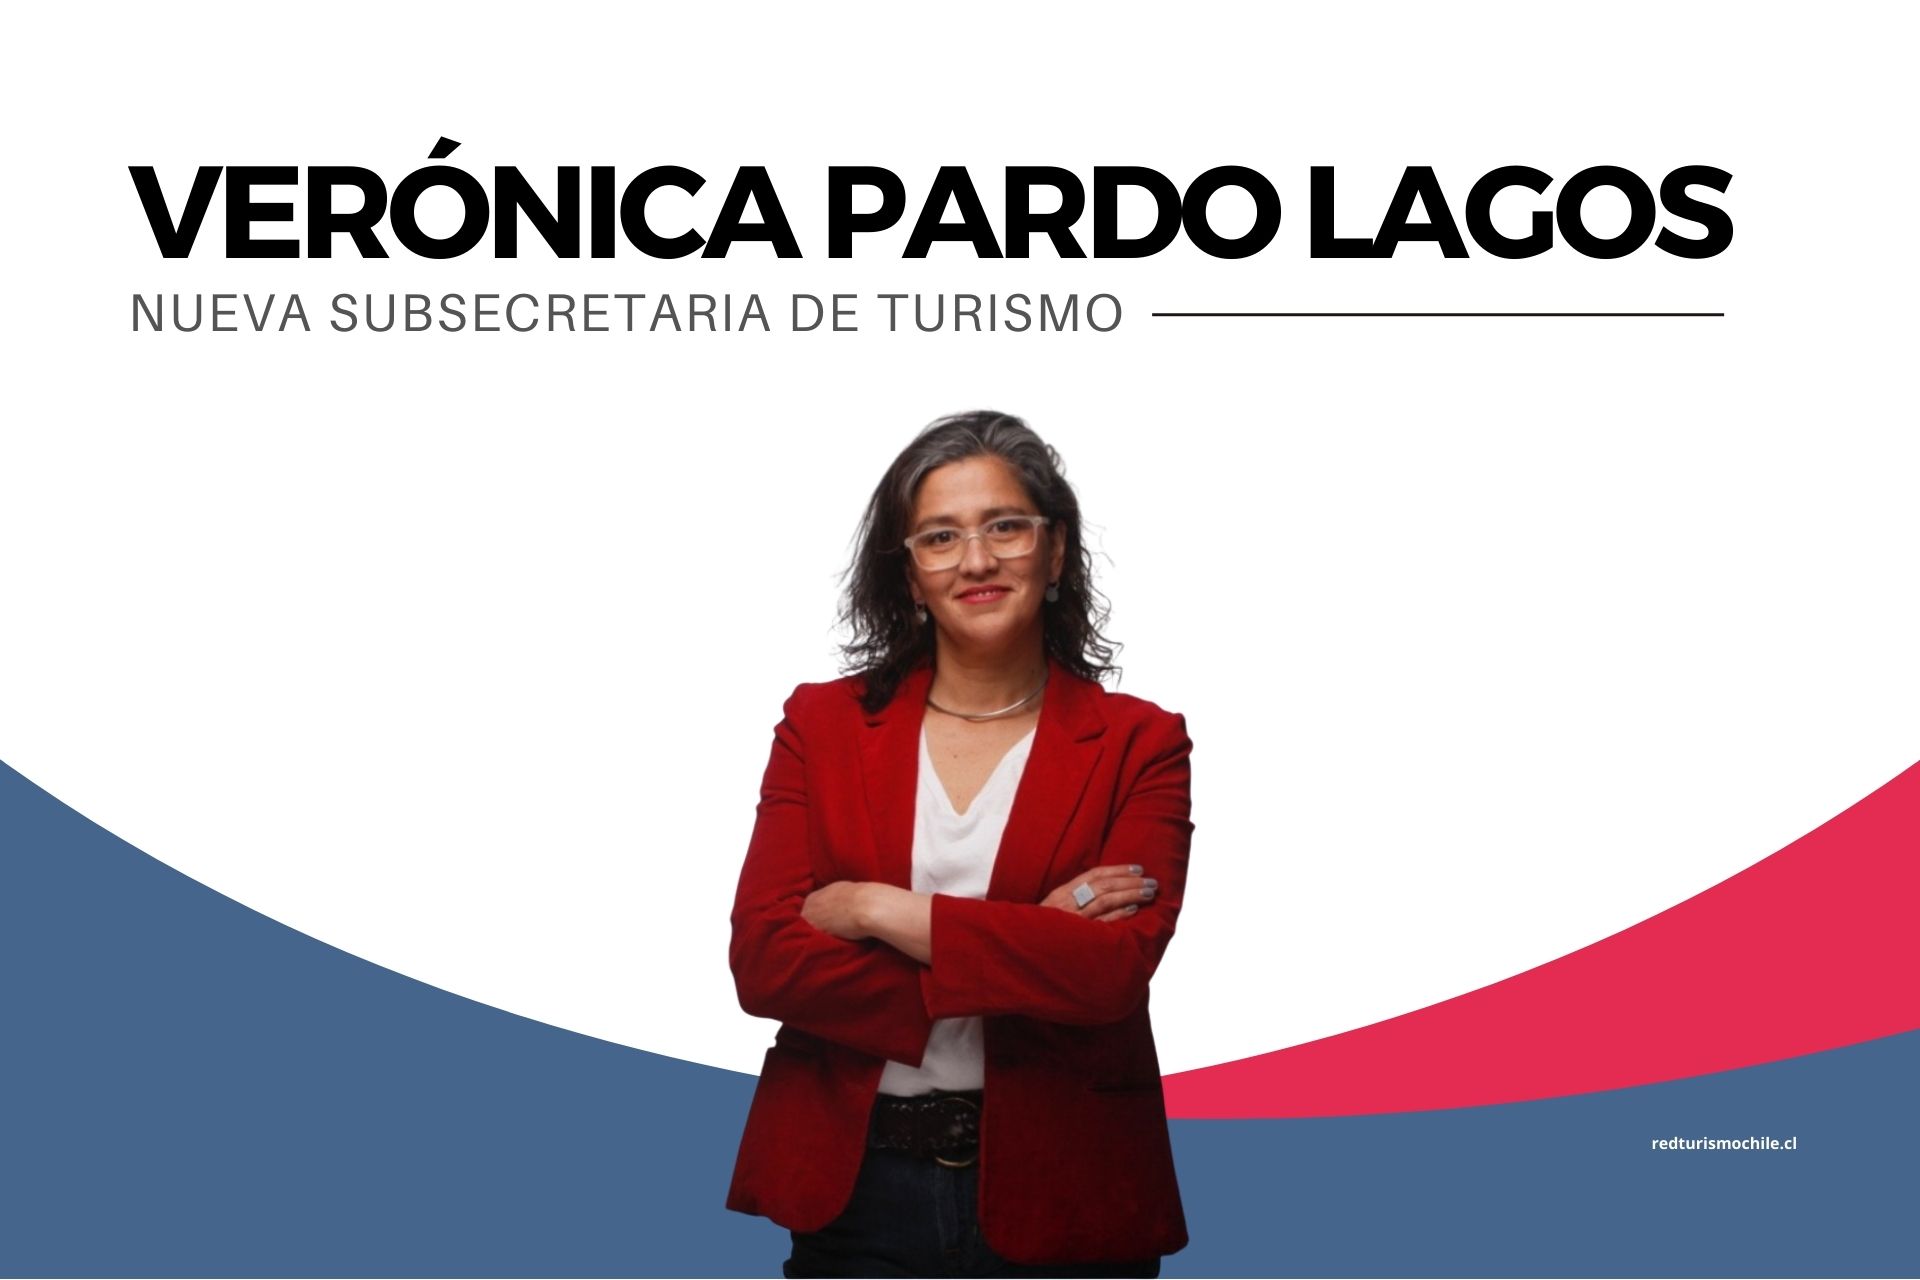 Nueva subsecretaria de Turismo: Verónica Pardo Lagos